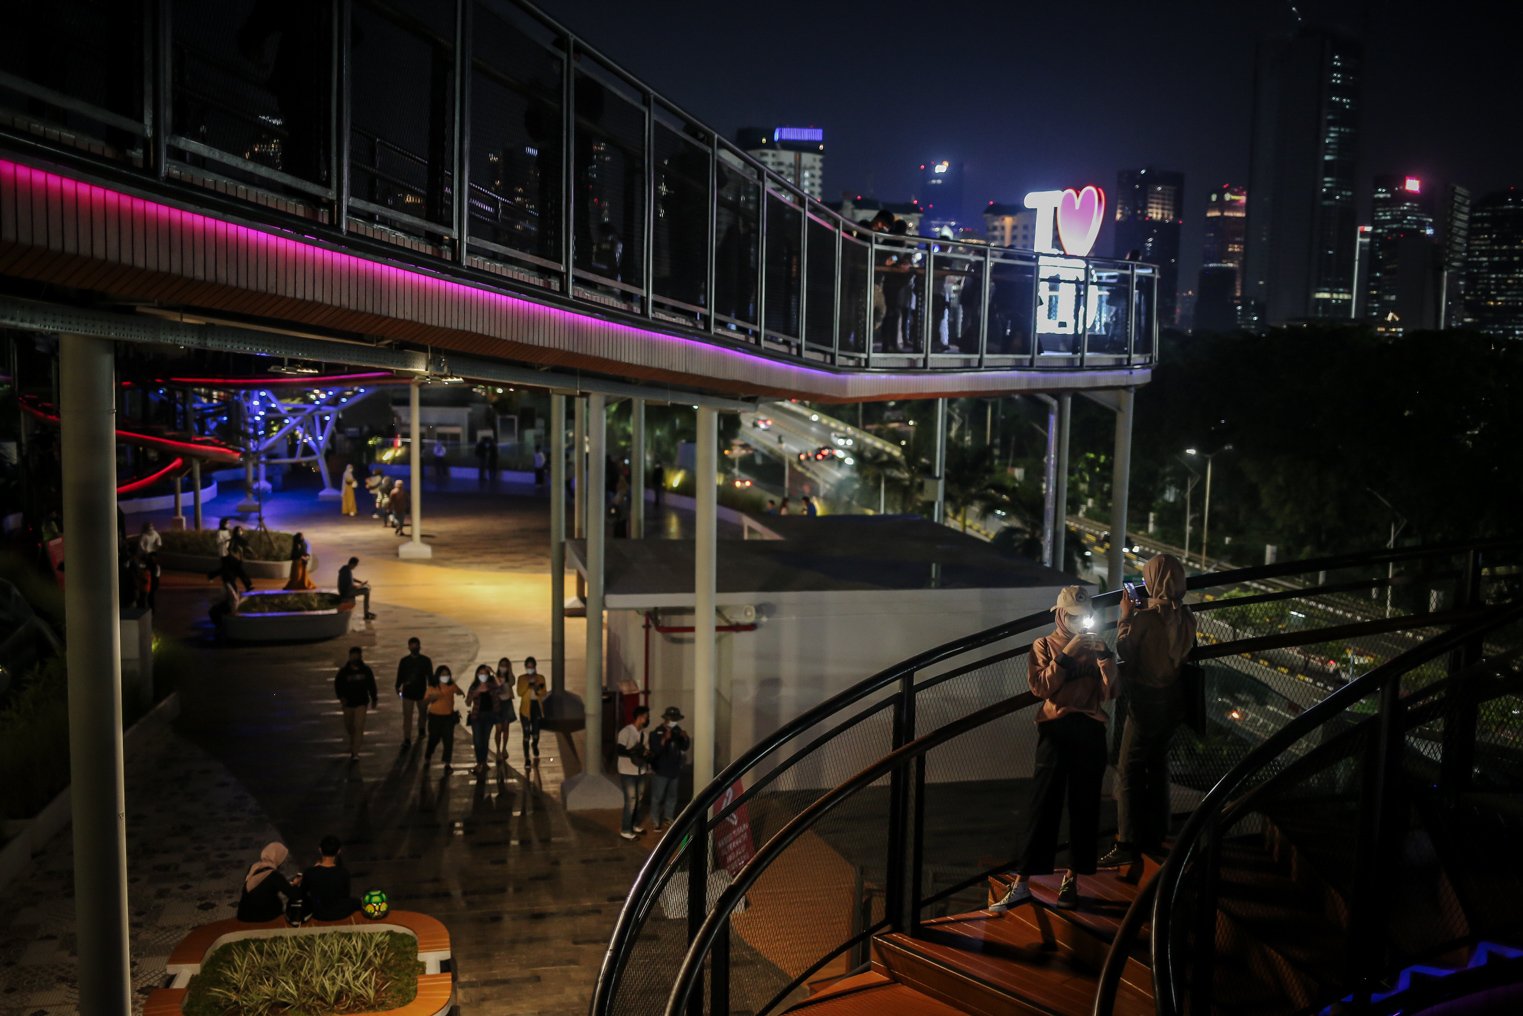 Pengunjung berswafoto dengan latar belakang lanskap perkotaan di Skywalk Senayan Park, Jakarta, Jumat (30/12/2021). Kawasan tersebut menjadi salah satu objek wisata ibu kota yang ramai dikunjungi oleh warga dengan menyajikan pemandangan lanskap perkotaan.